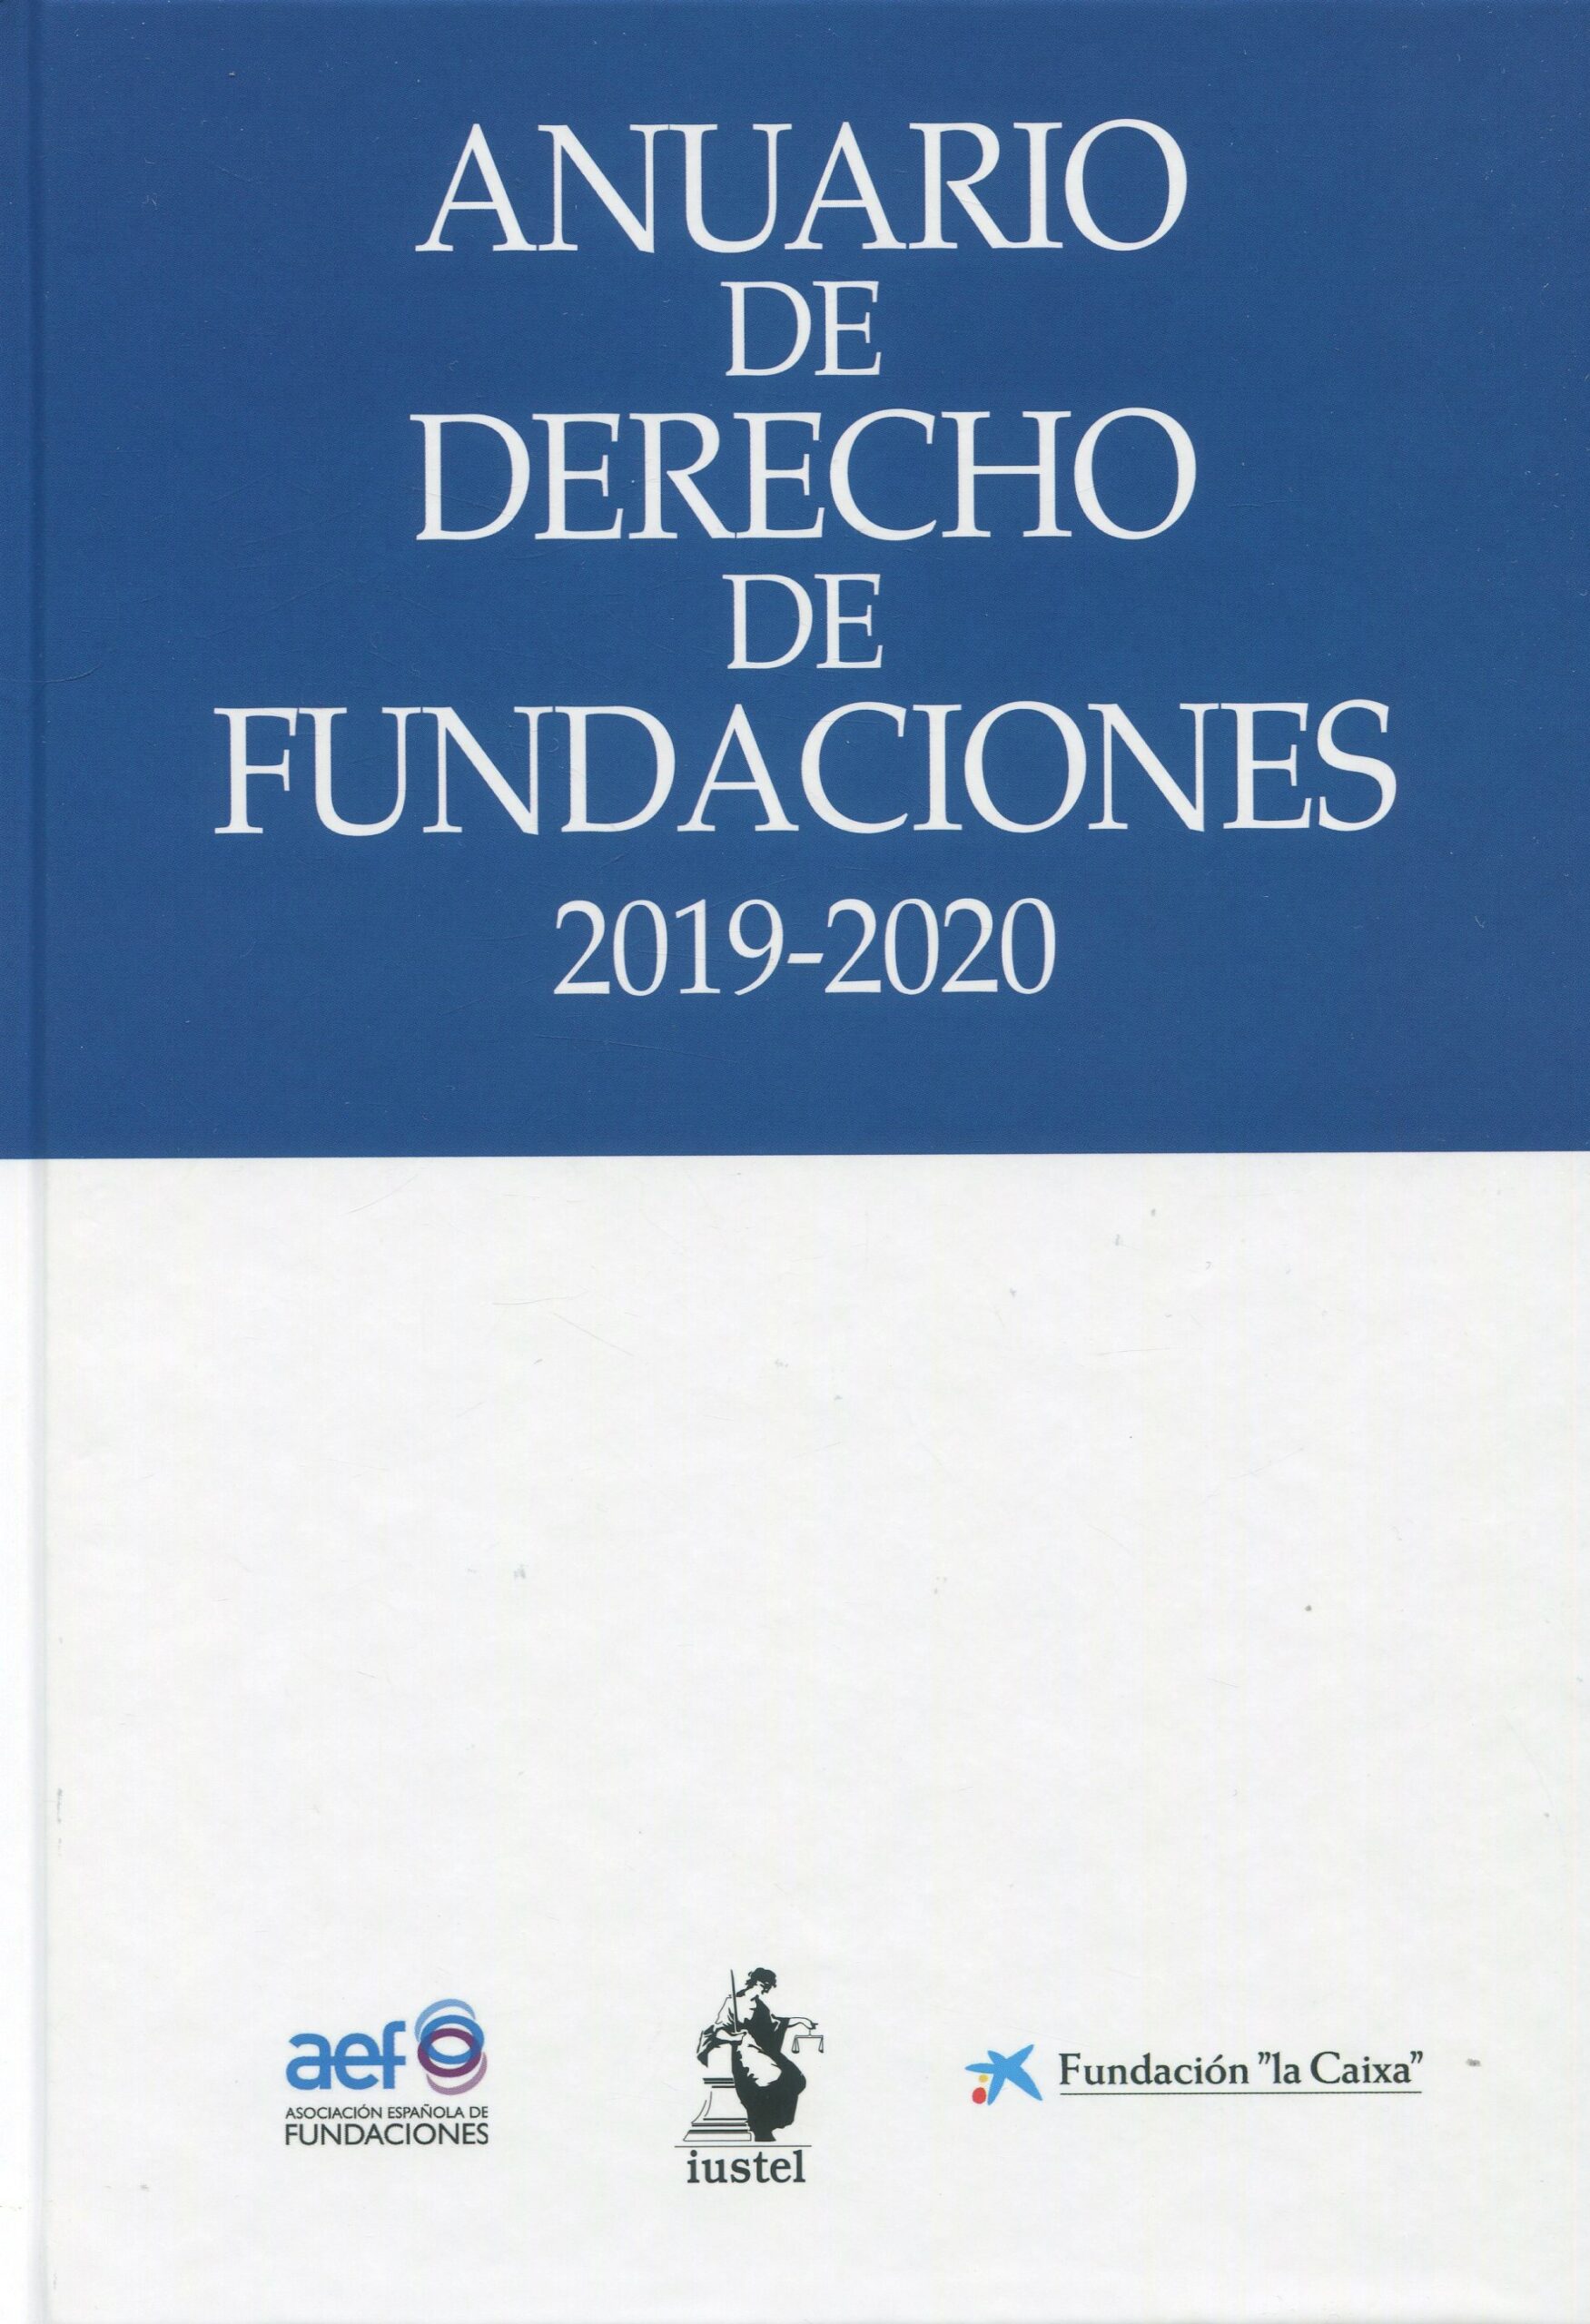 Anuario de Derecho de Fundaciones 2019-2020